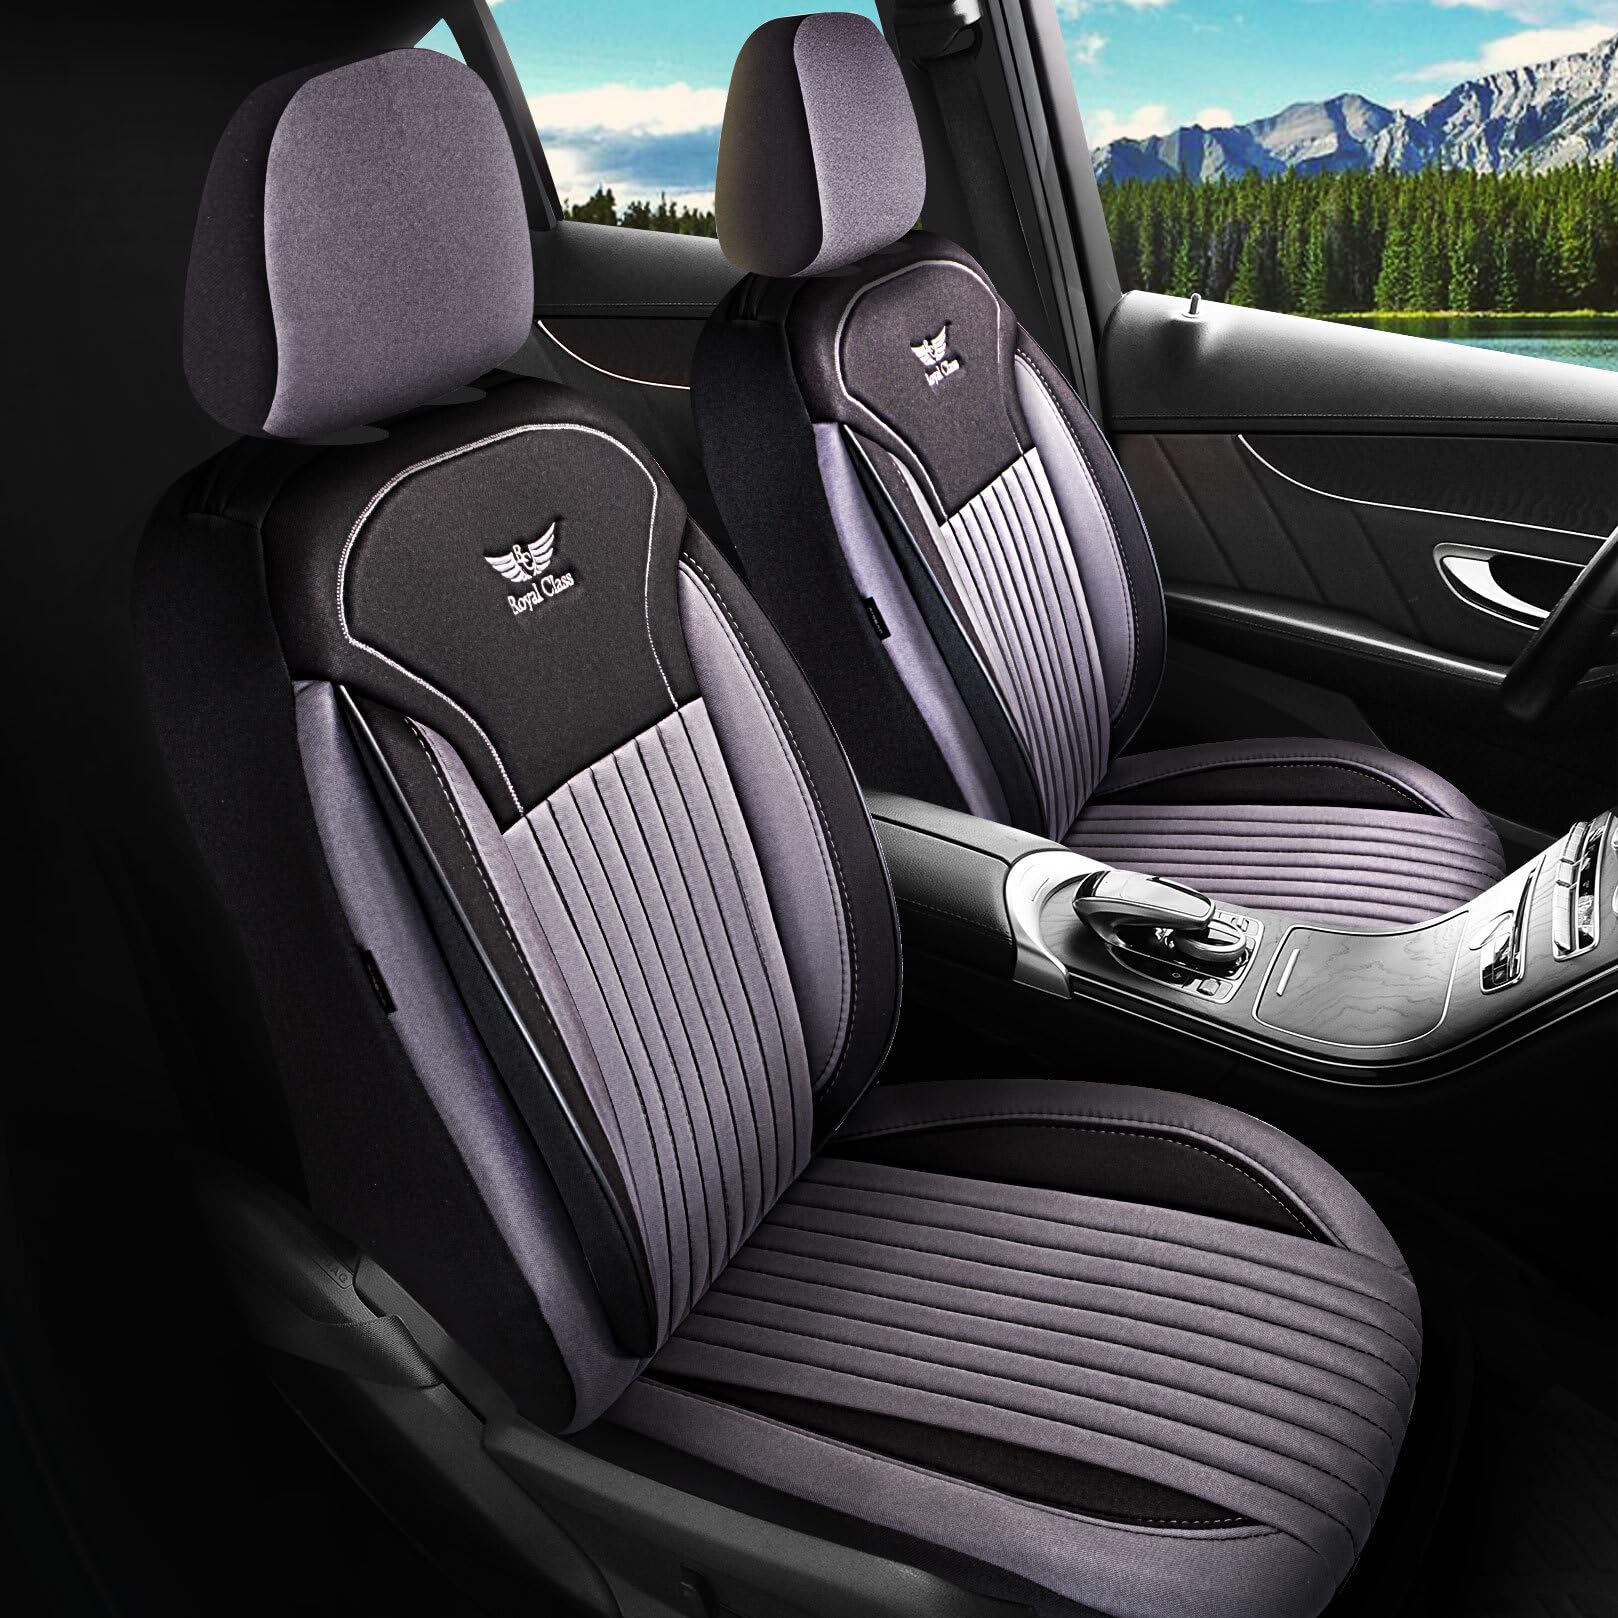 Royal Class Auto Sitzbezüge kompatibel für Mazda CX-3 in Schwarz Grau Fahrer und Beifahrer, Autositzbezug Schonbezug Sitzbezug Auto Komplettset 2-Sitze Jakar Stoff von RC Royal Class